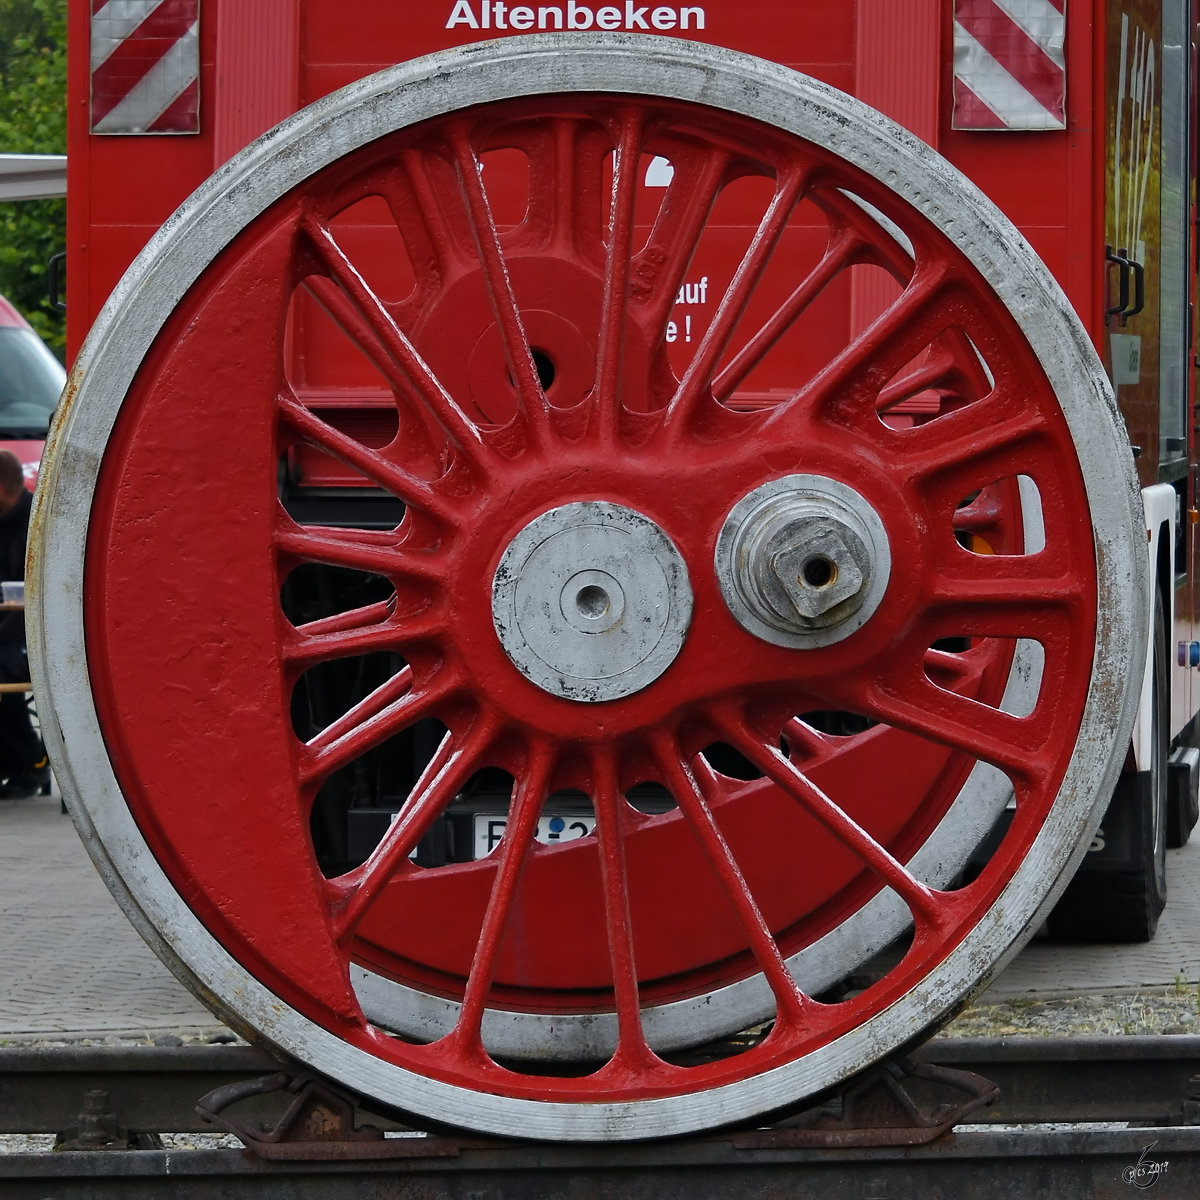 Das Treibrad einer Dampflokomotive. (Bahnbetriebswerk Altenbeken, Juli 2019)